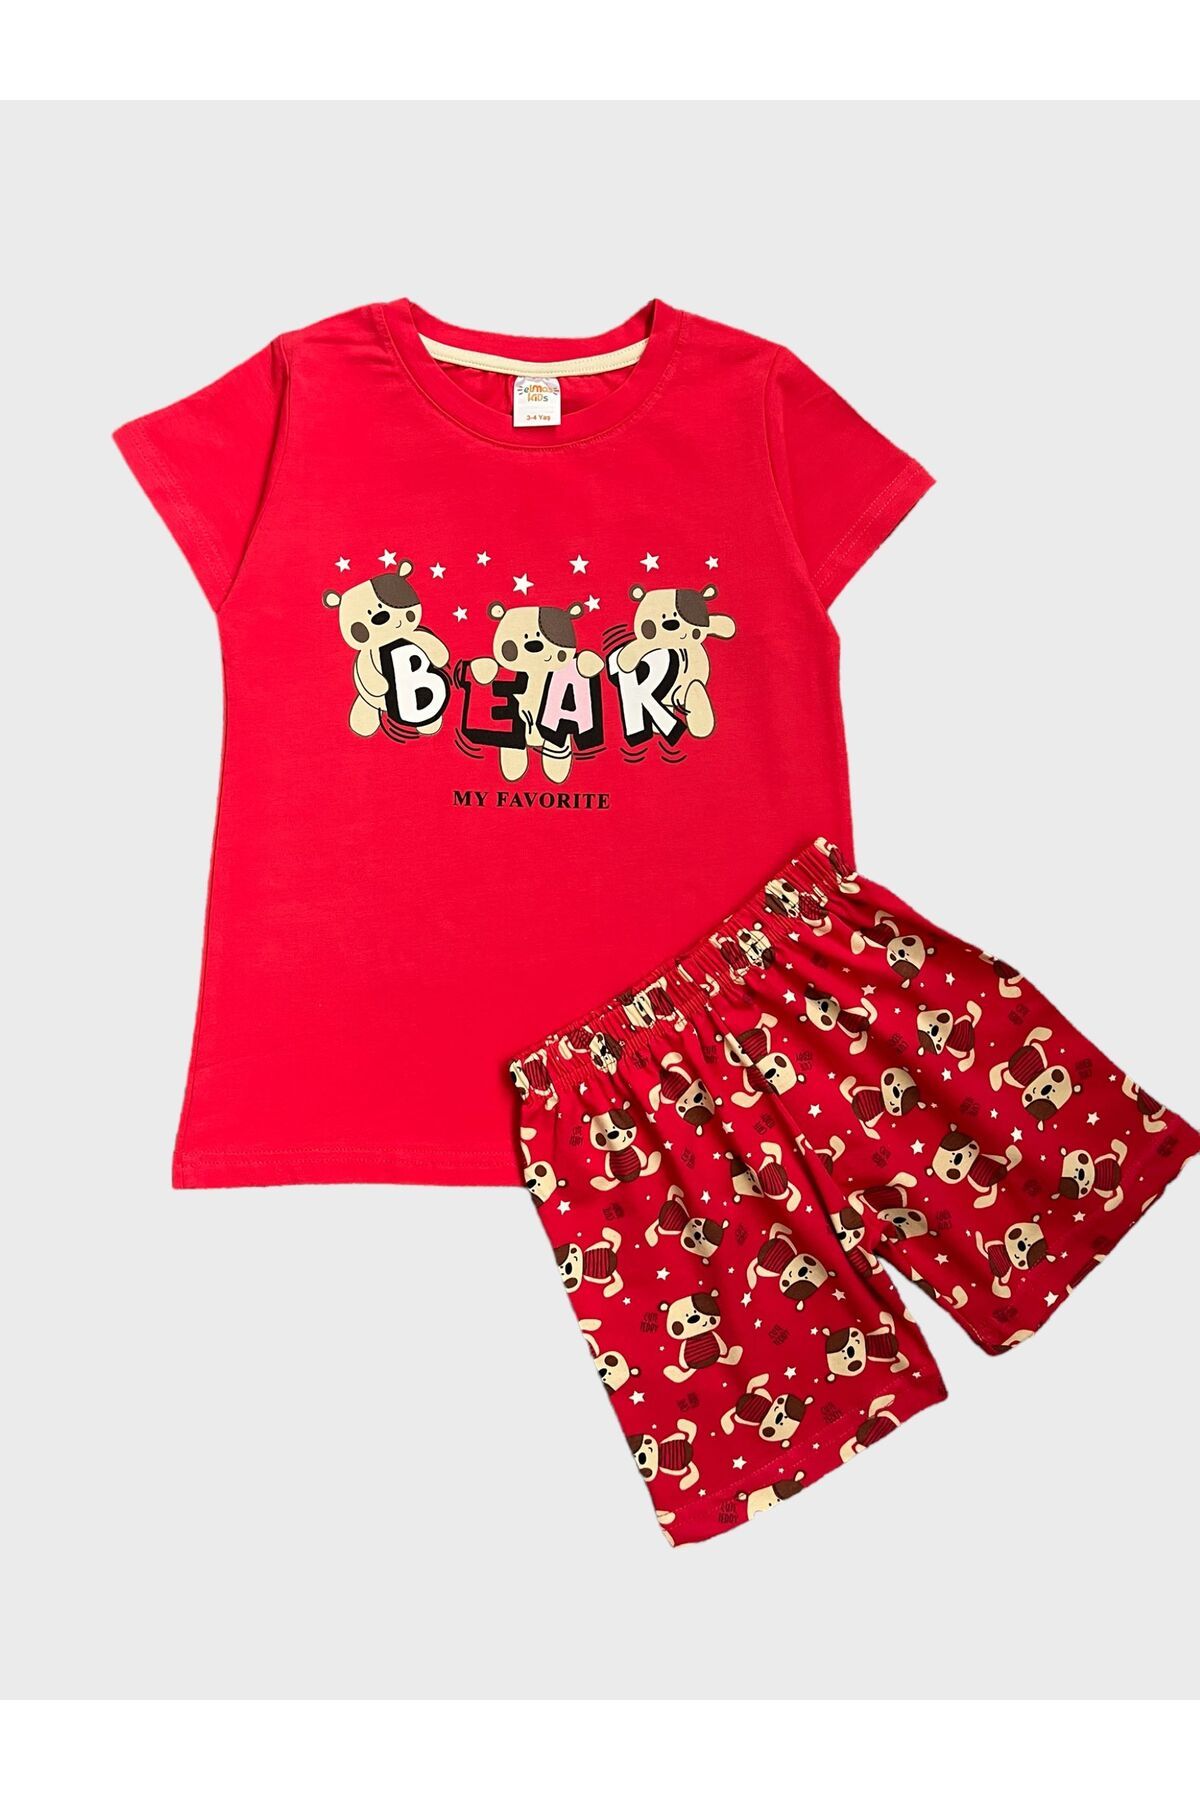 elmas kids Kız Çocuk %100 Pamuklu Bear Ayıcık Desenli Kırmızı Kısa Kollu Şortlu Yazlık Pijama Takımı